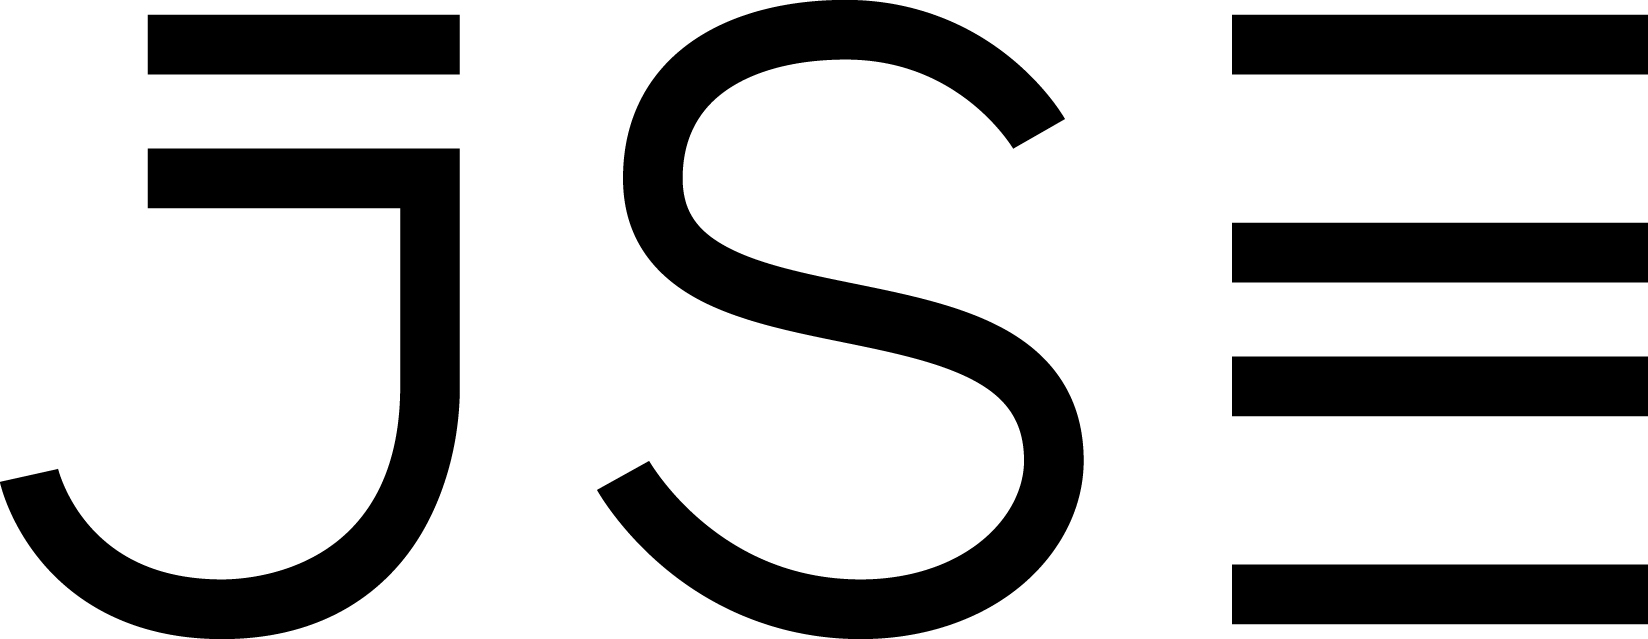 JSE-Logo-Blk-on-Wht-cmyk